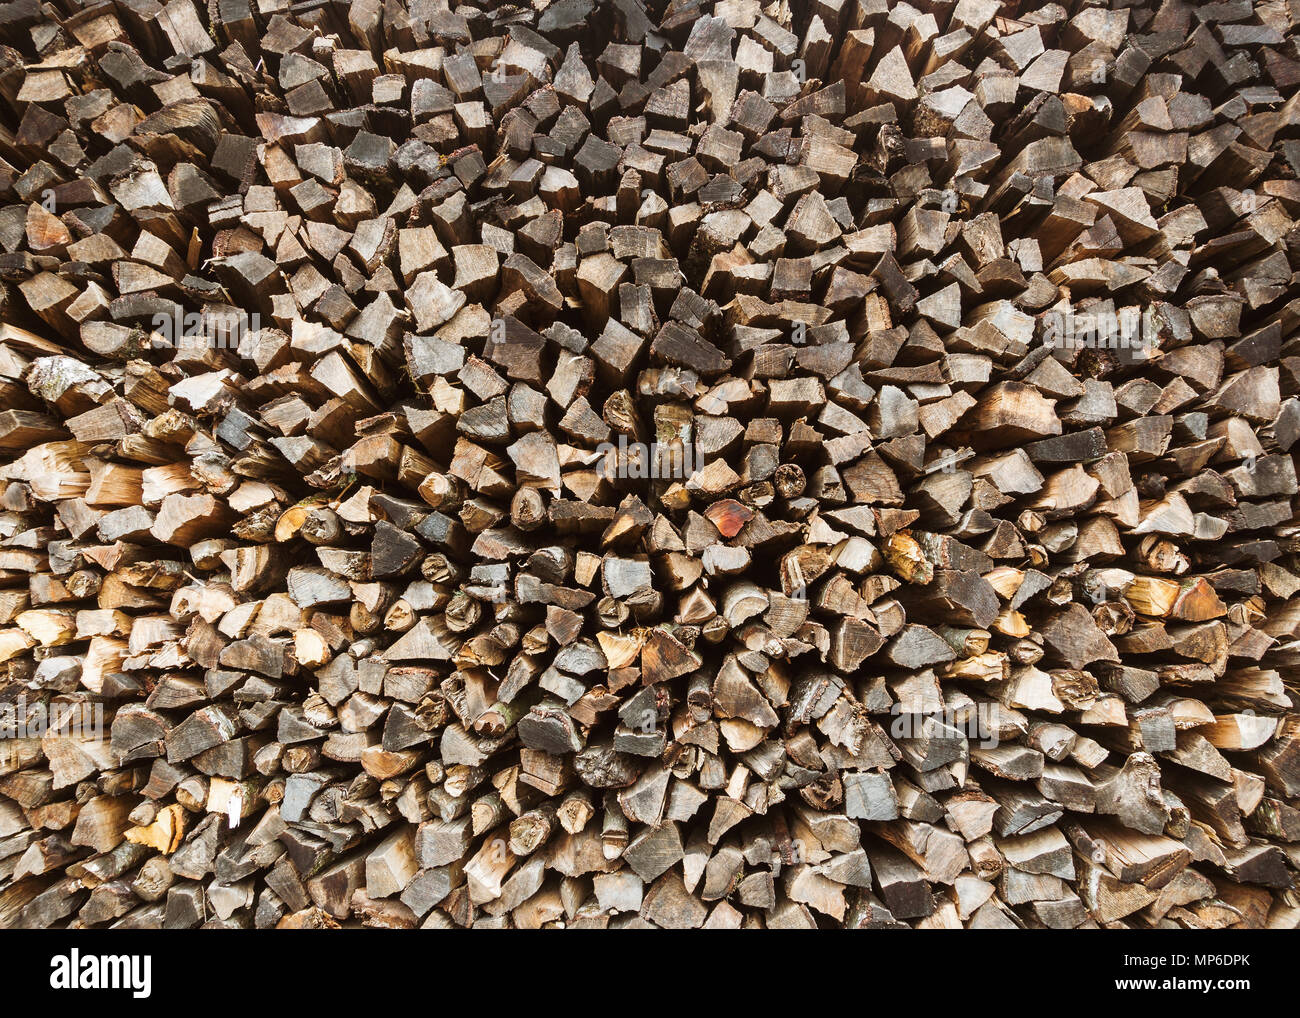 Stapel von Brennholz, Feuerholz gehackt Hintergrund. Stockfoto